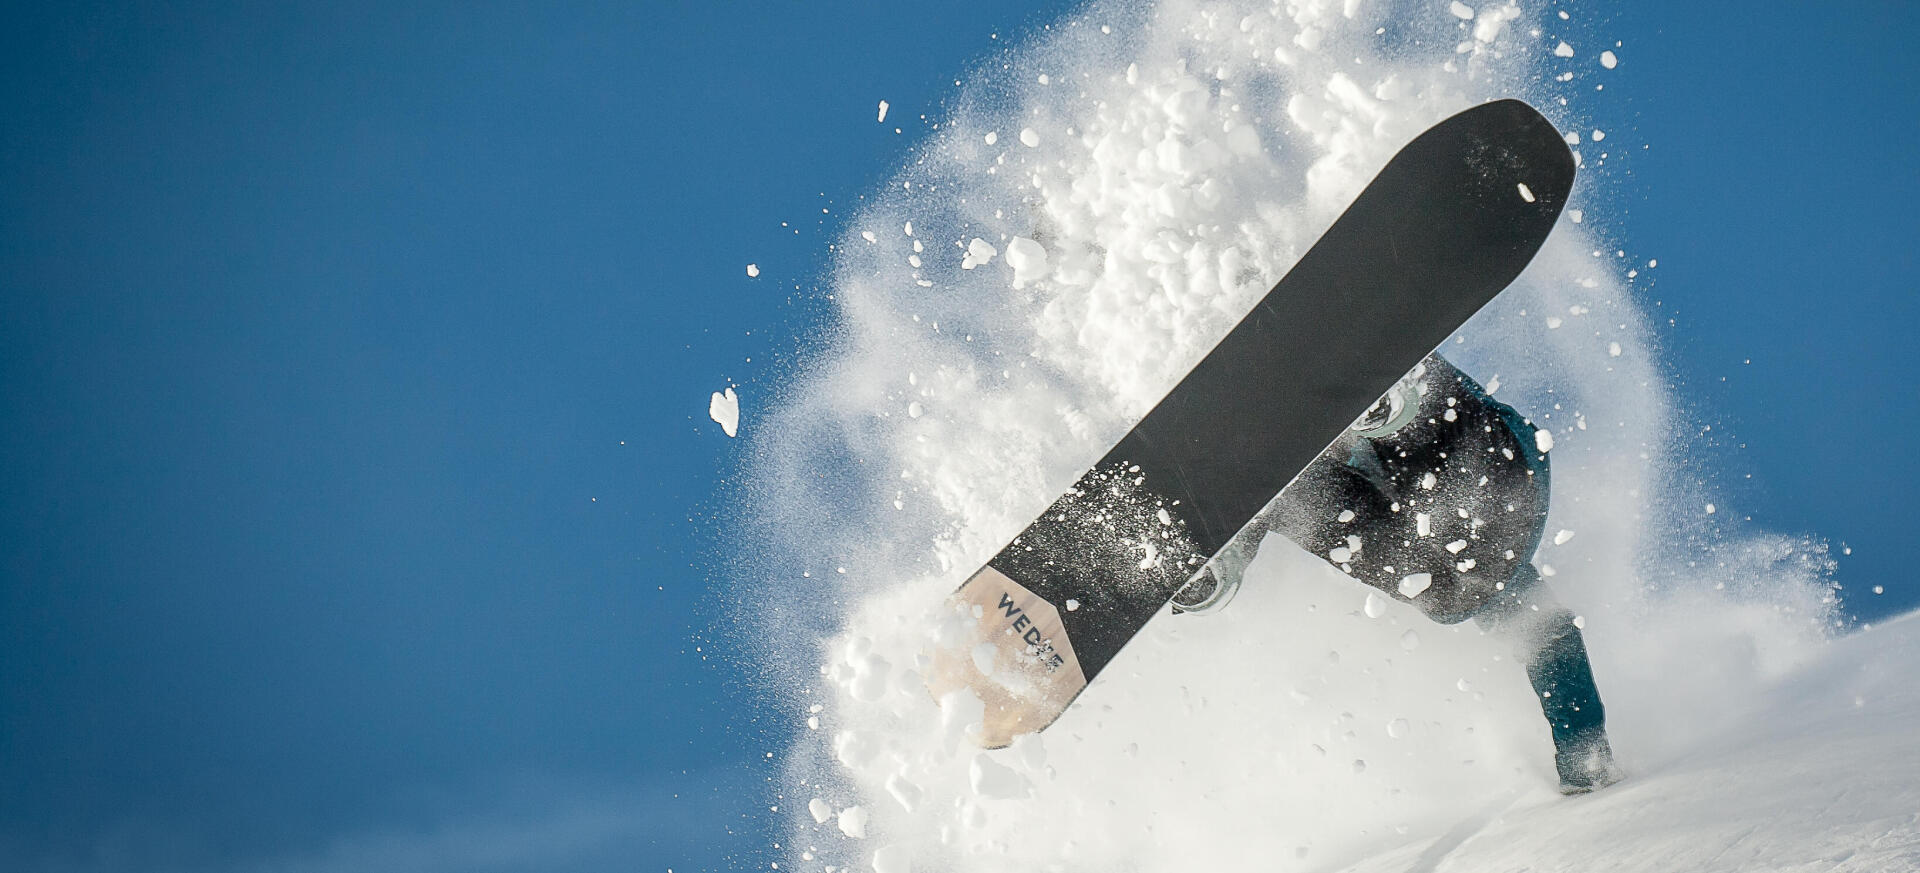 Szükséges az új snowboardot waxolni? 